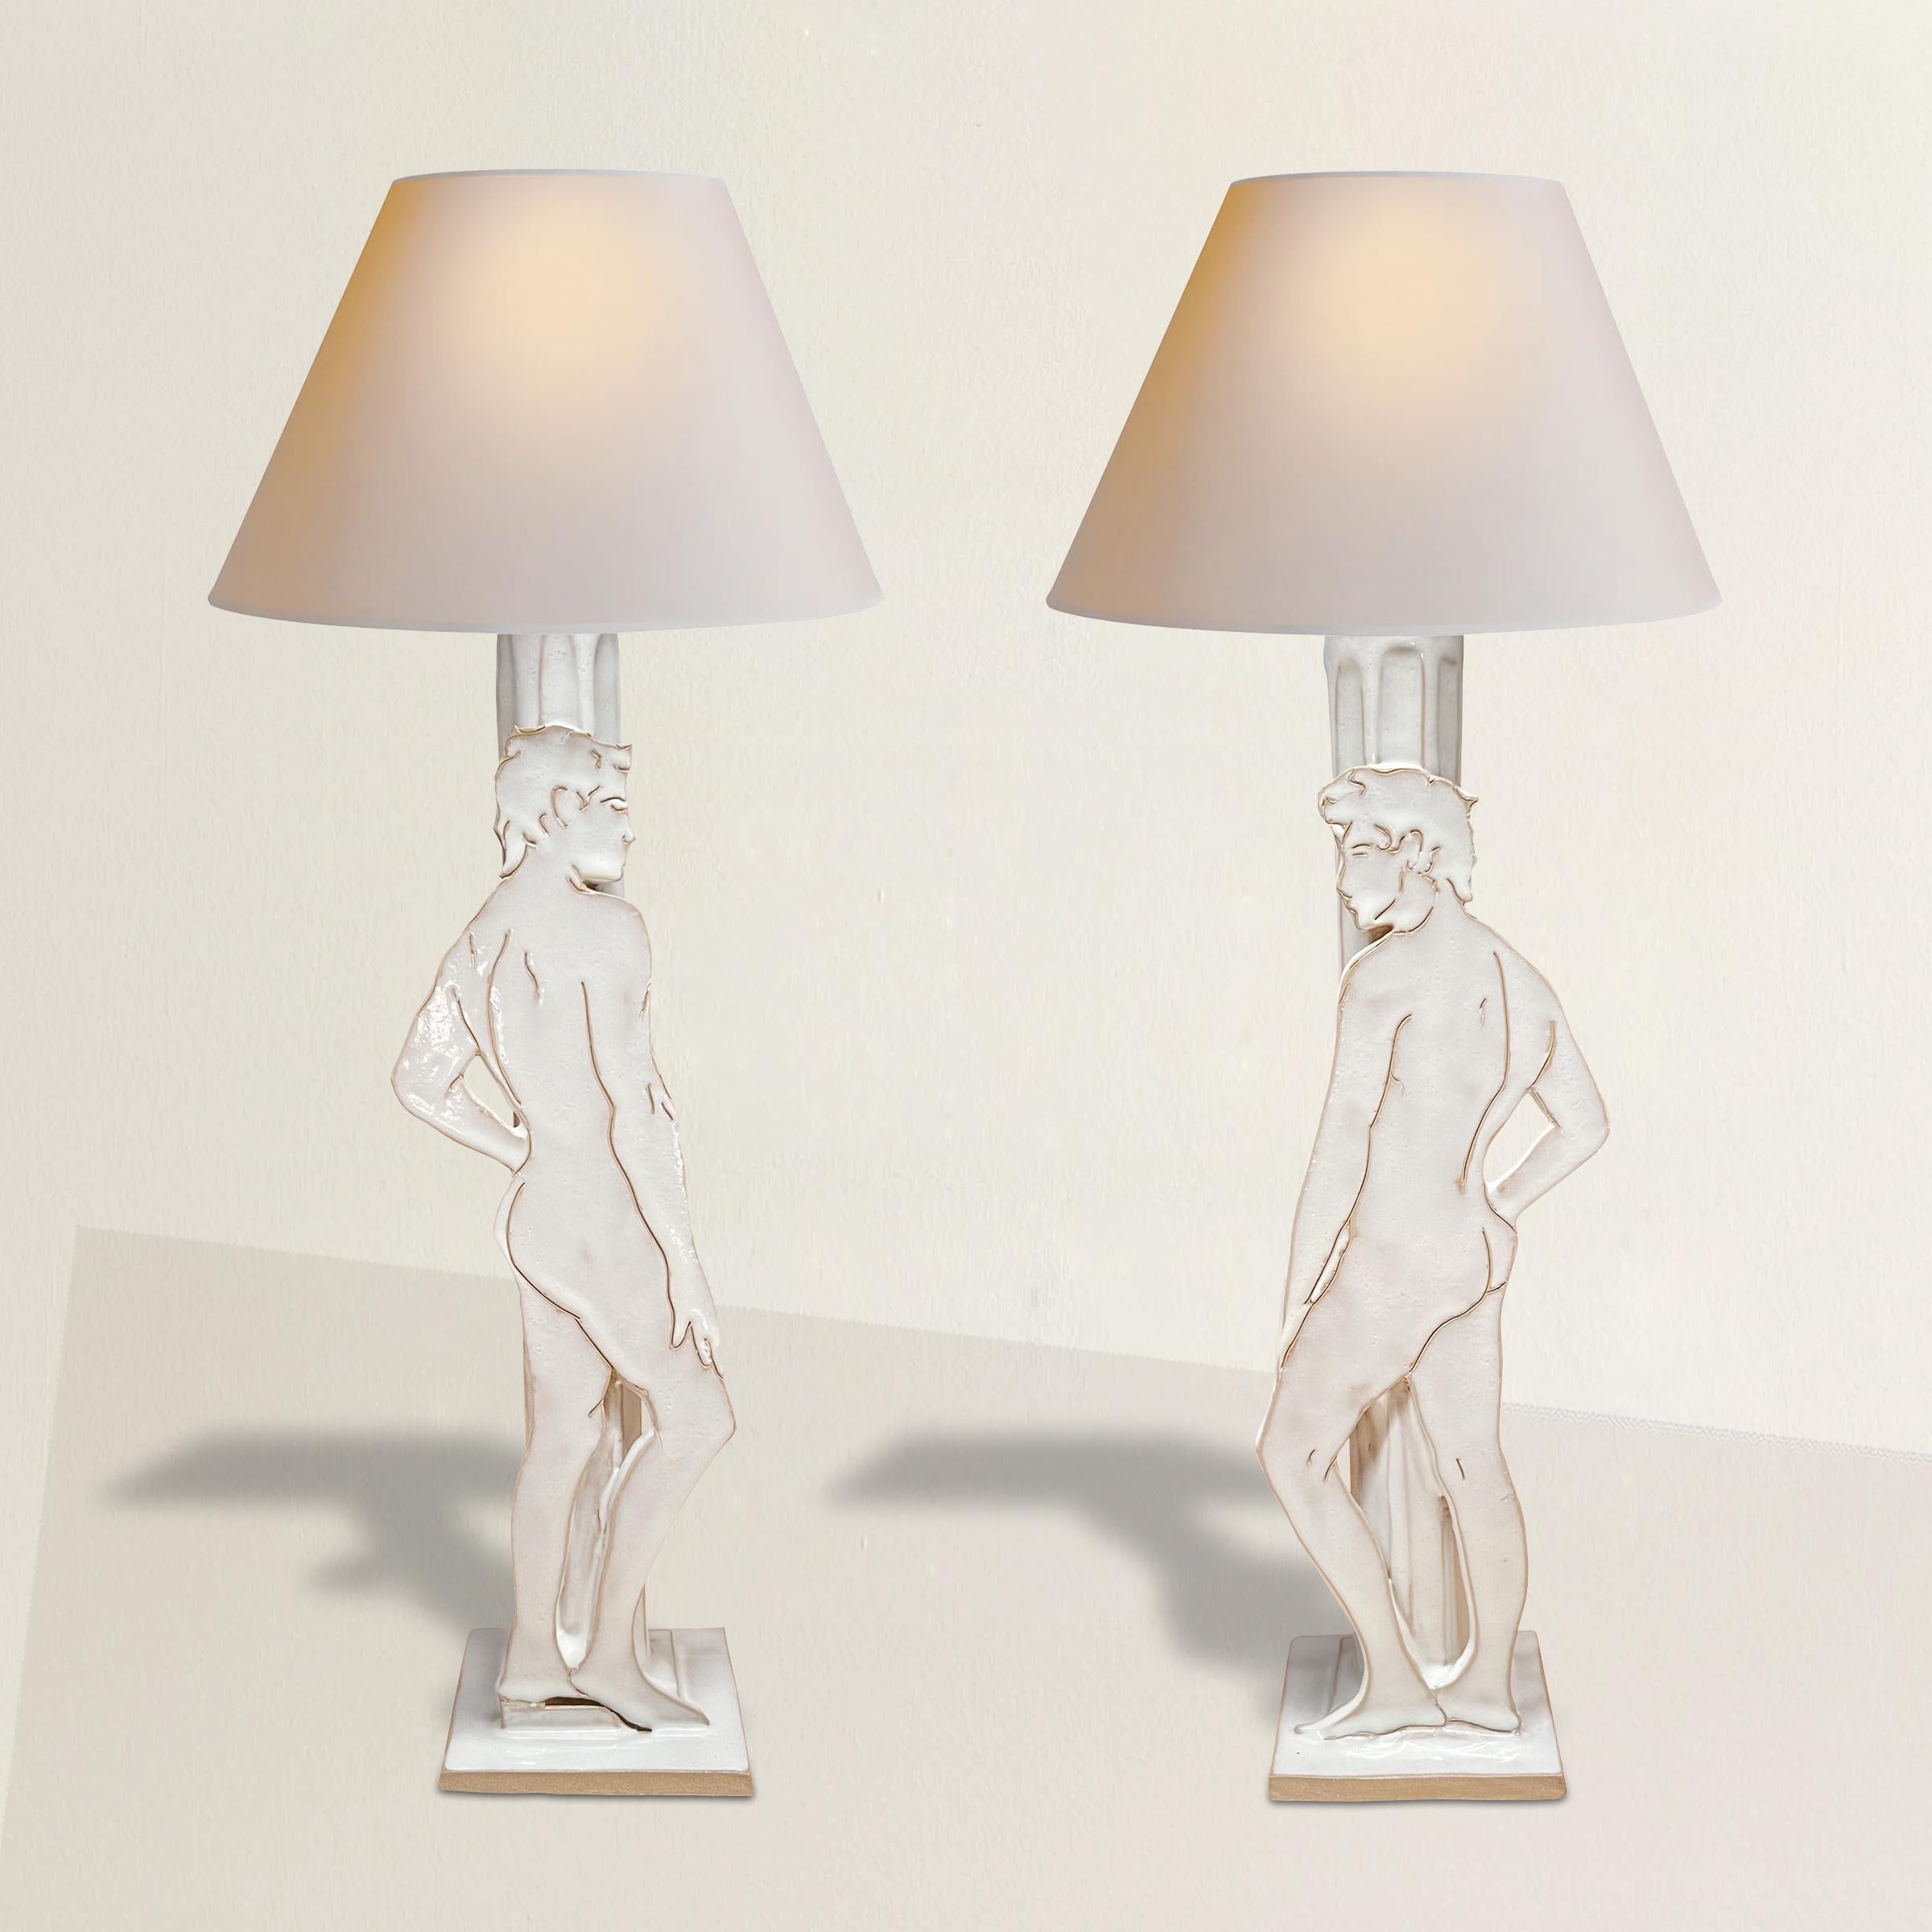 Une paire étonnante et chic de lampes de table brésiliennes du 21e siècle en céramique émaillée fabriquée à la main par des artistes, chacune avec une figure masculine nue unique dessinée à la main en contrapposto et appuyée sur une colonne